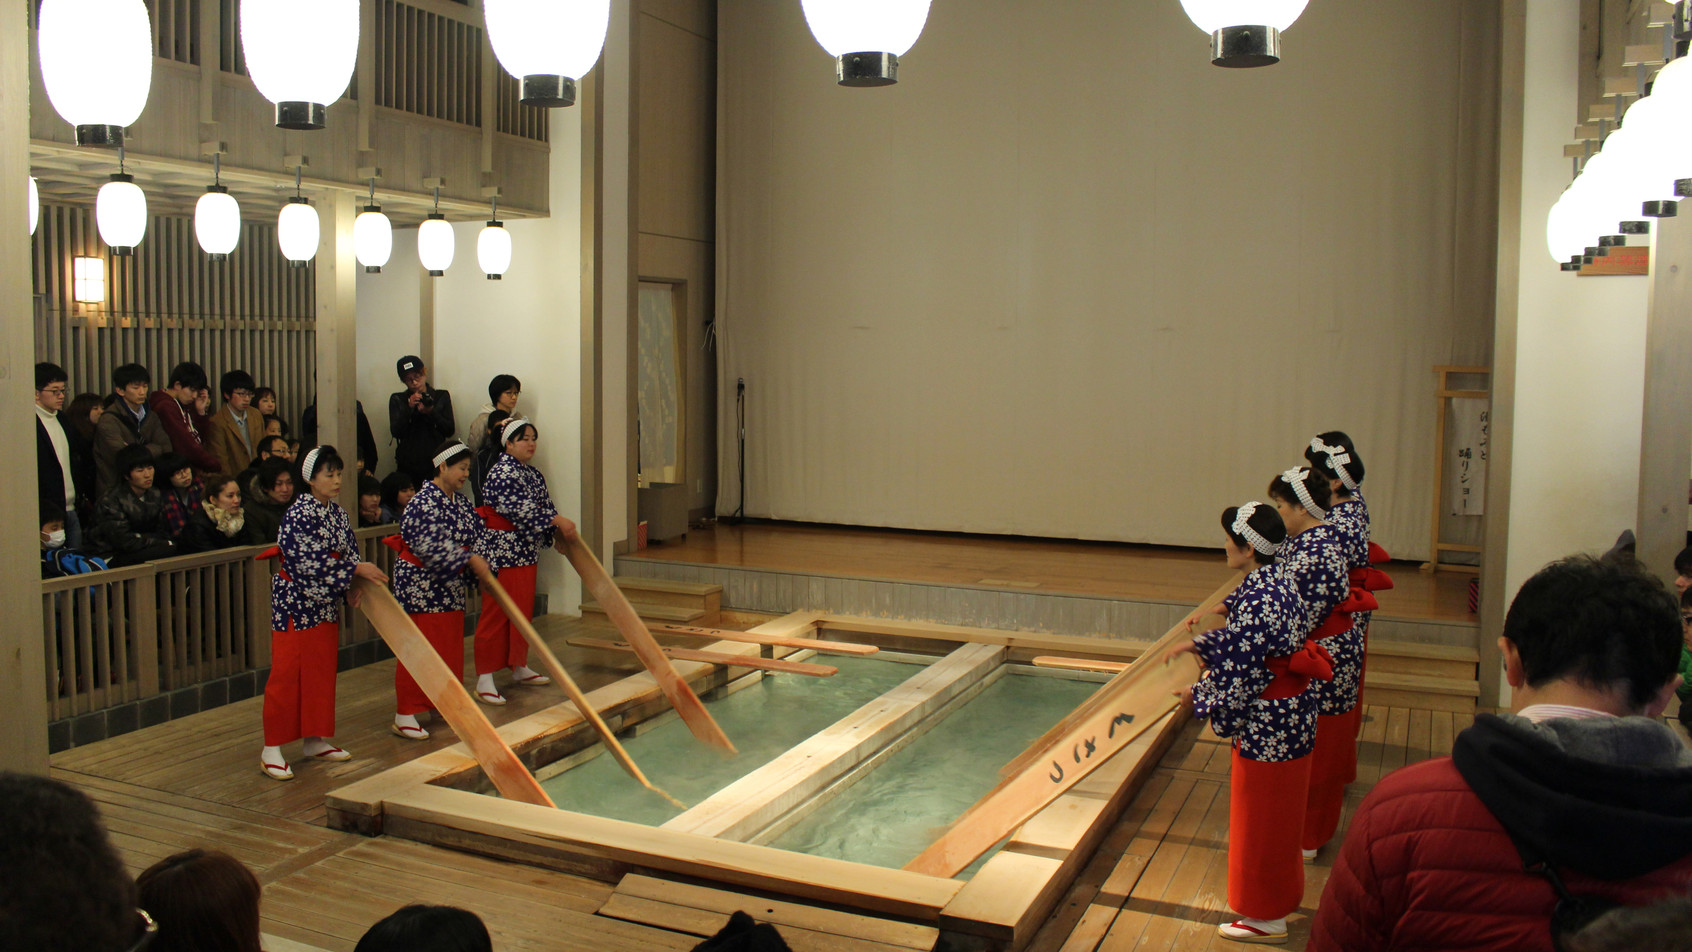  熱の湯では草津の伝統湯もみを行っております。(【観覧料金】大人600円・小学生300円）